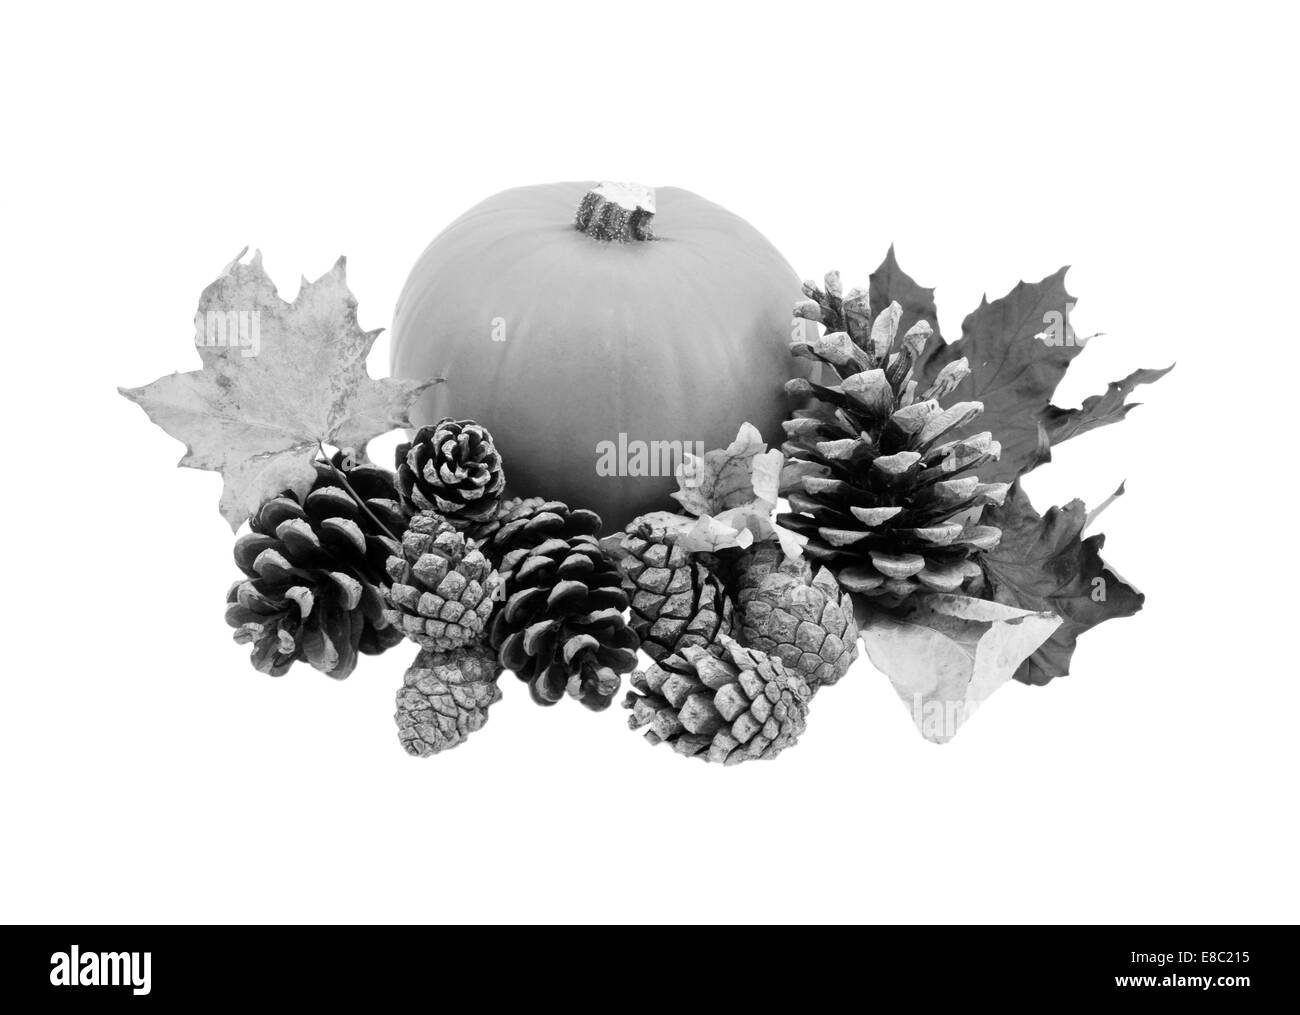 Herbstliche Blätter und Tannenzapfen mit einem Reifen Kürbis isoliert auf einem weißen Hintergrund - monochrome Verarbeitung Stockfoto